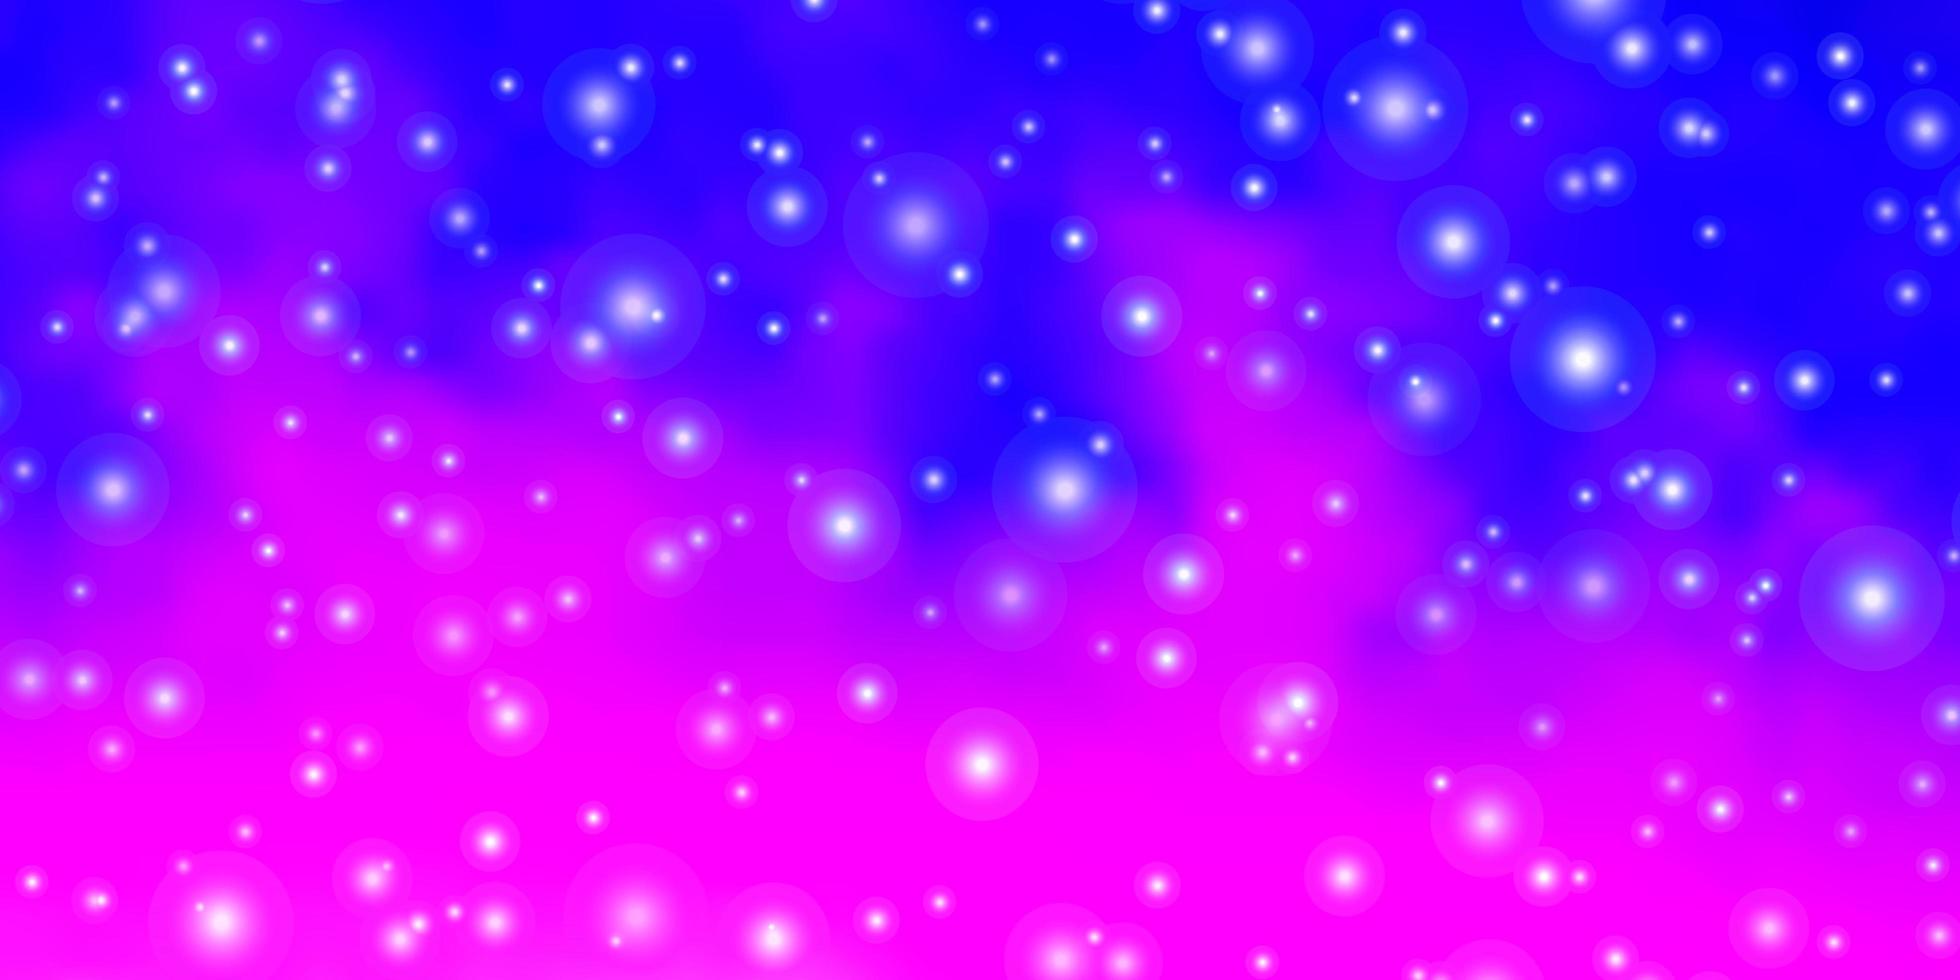 textura de vetor rosa roxo claro com lindas estrelas brilhando ilustração colorida com padrão de estrelas pequenas e grandes para livretos de anúncio de ano novo